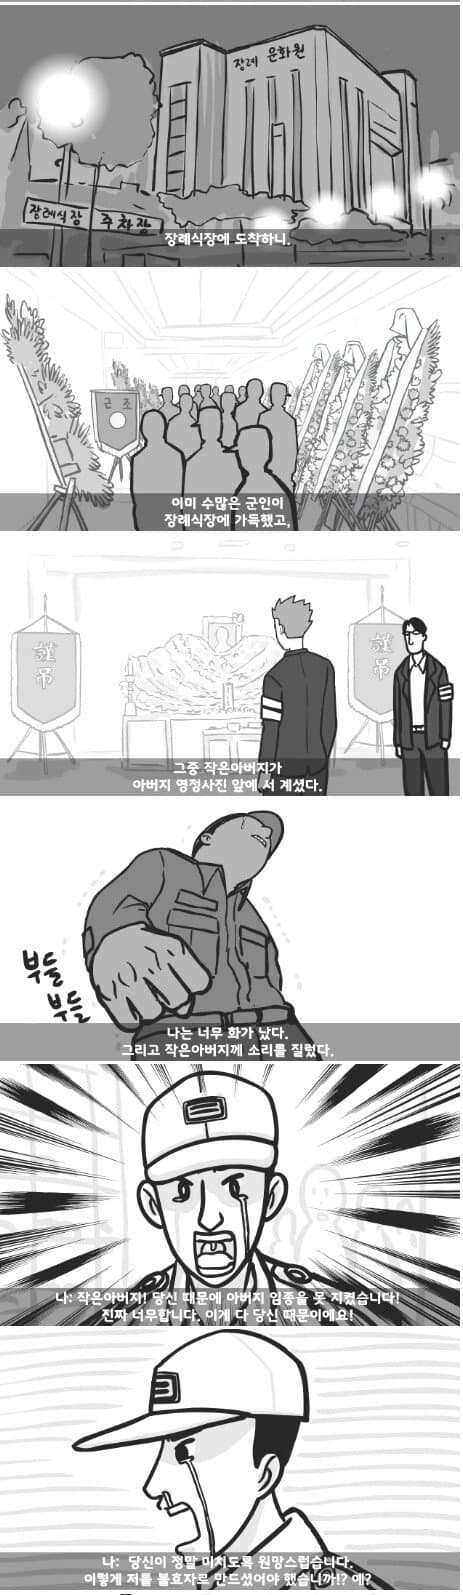 군대 4스타인 만화 11.jpg